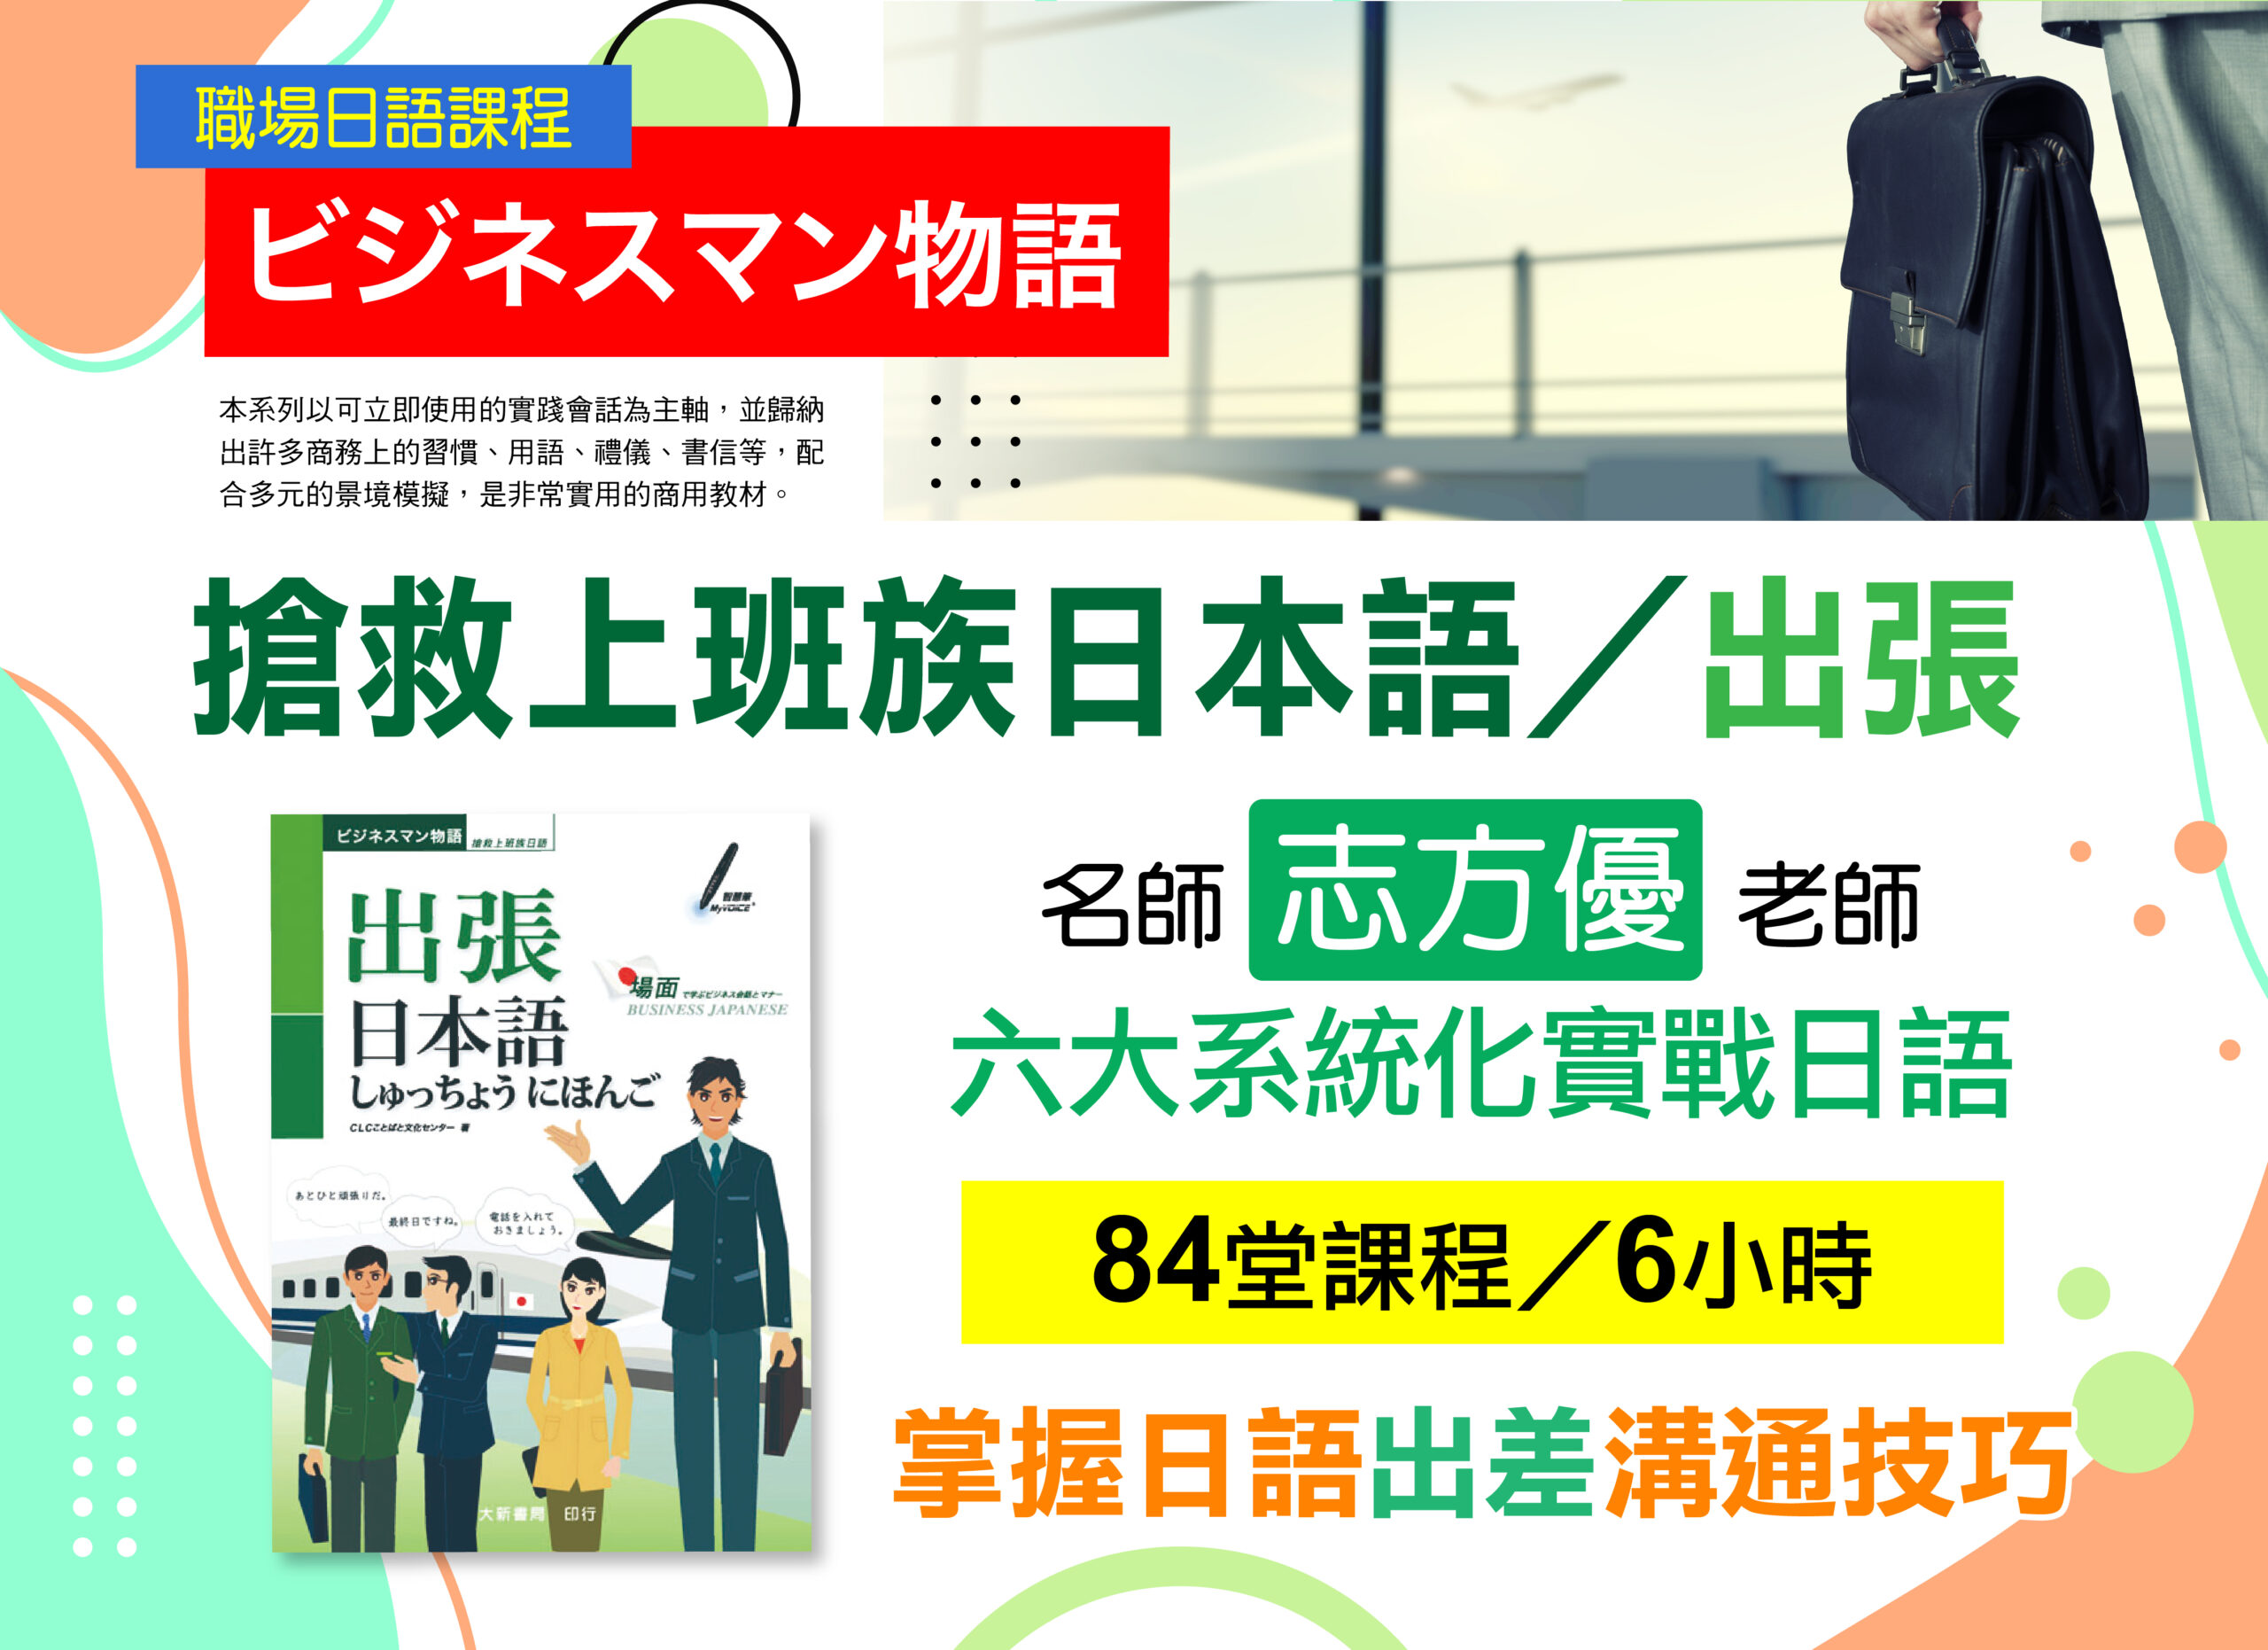 《搶救上班族日本語-出張》-職場日語課程